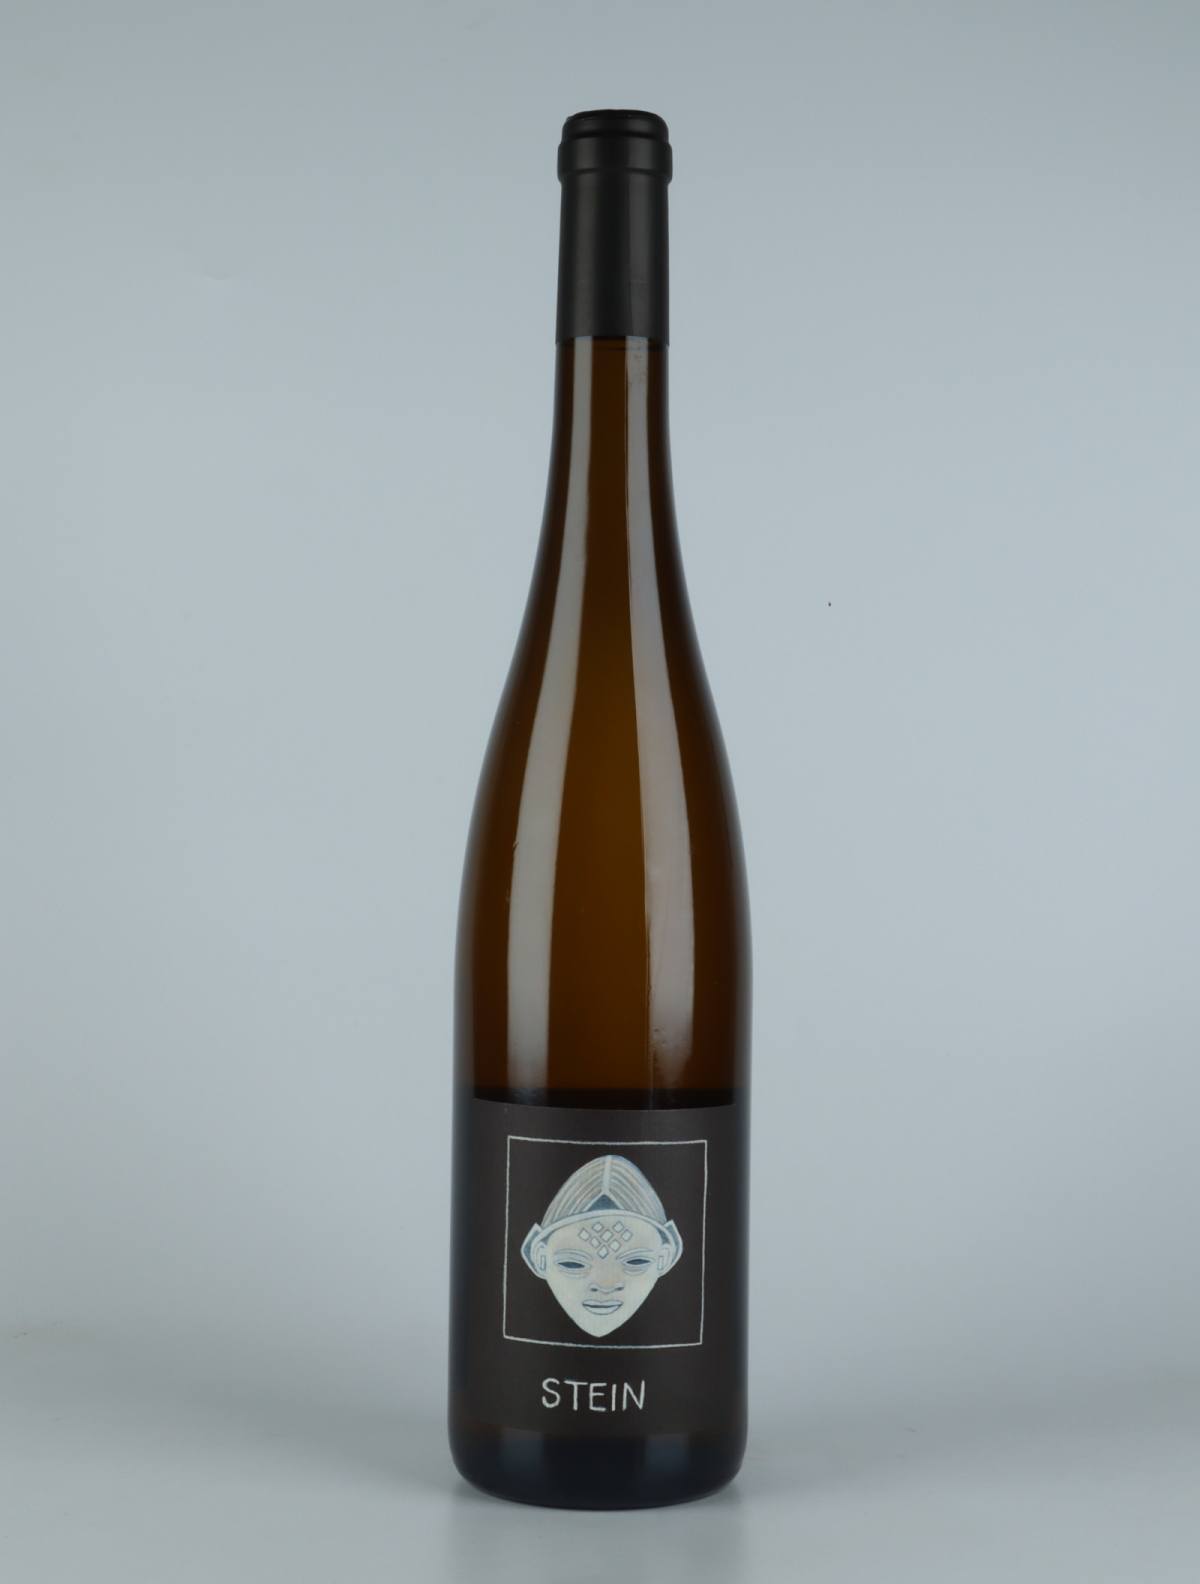 En flaske 2019 Riesling - Stein Hvidvin fra Domaine Rietsch, Alsace i Frankrig